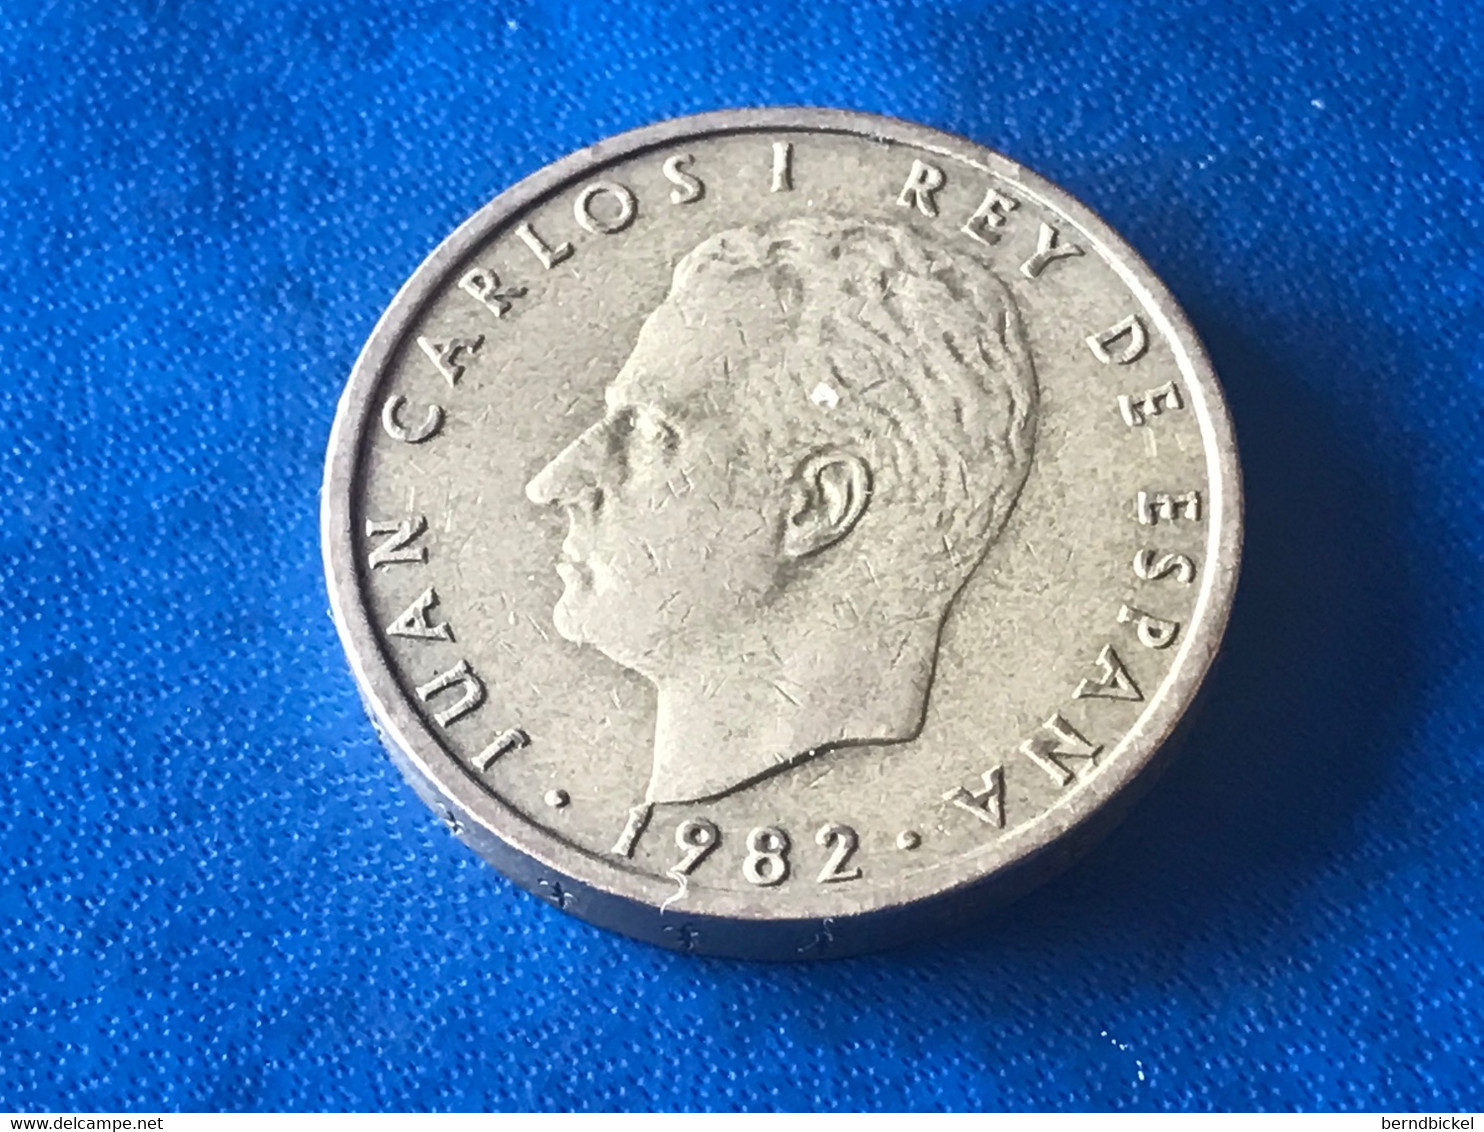 Münze Münzen Umlaufmünze Spanien 100 Pesetas 1982 - 100 Pesetas